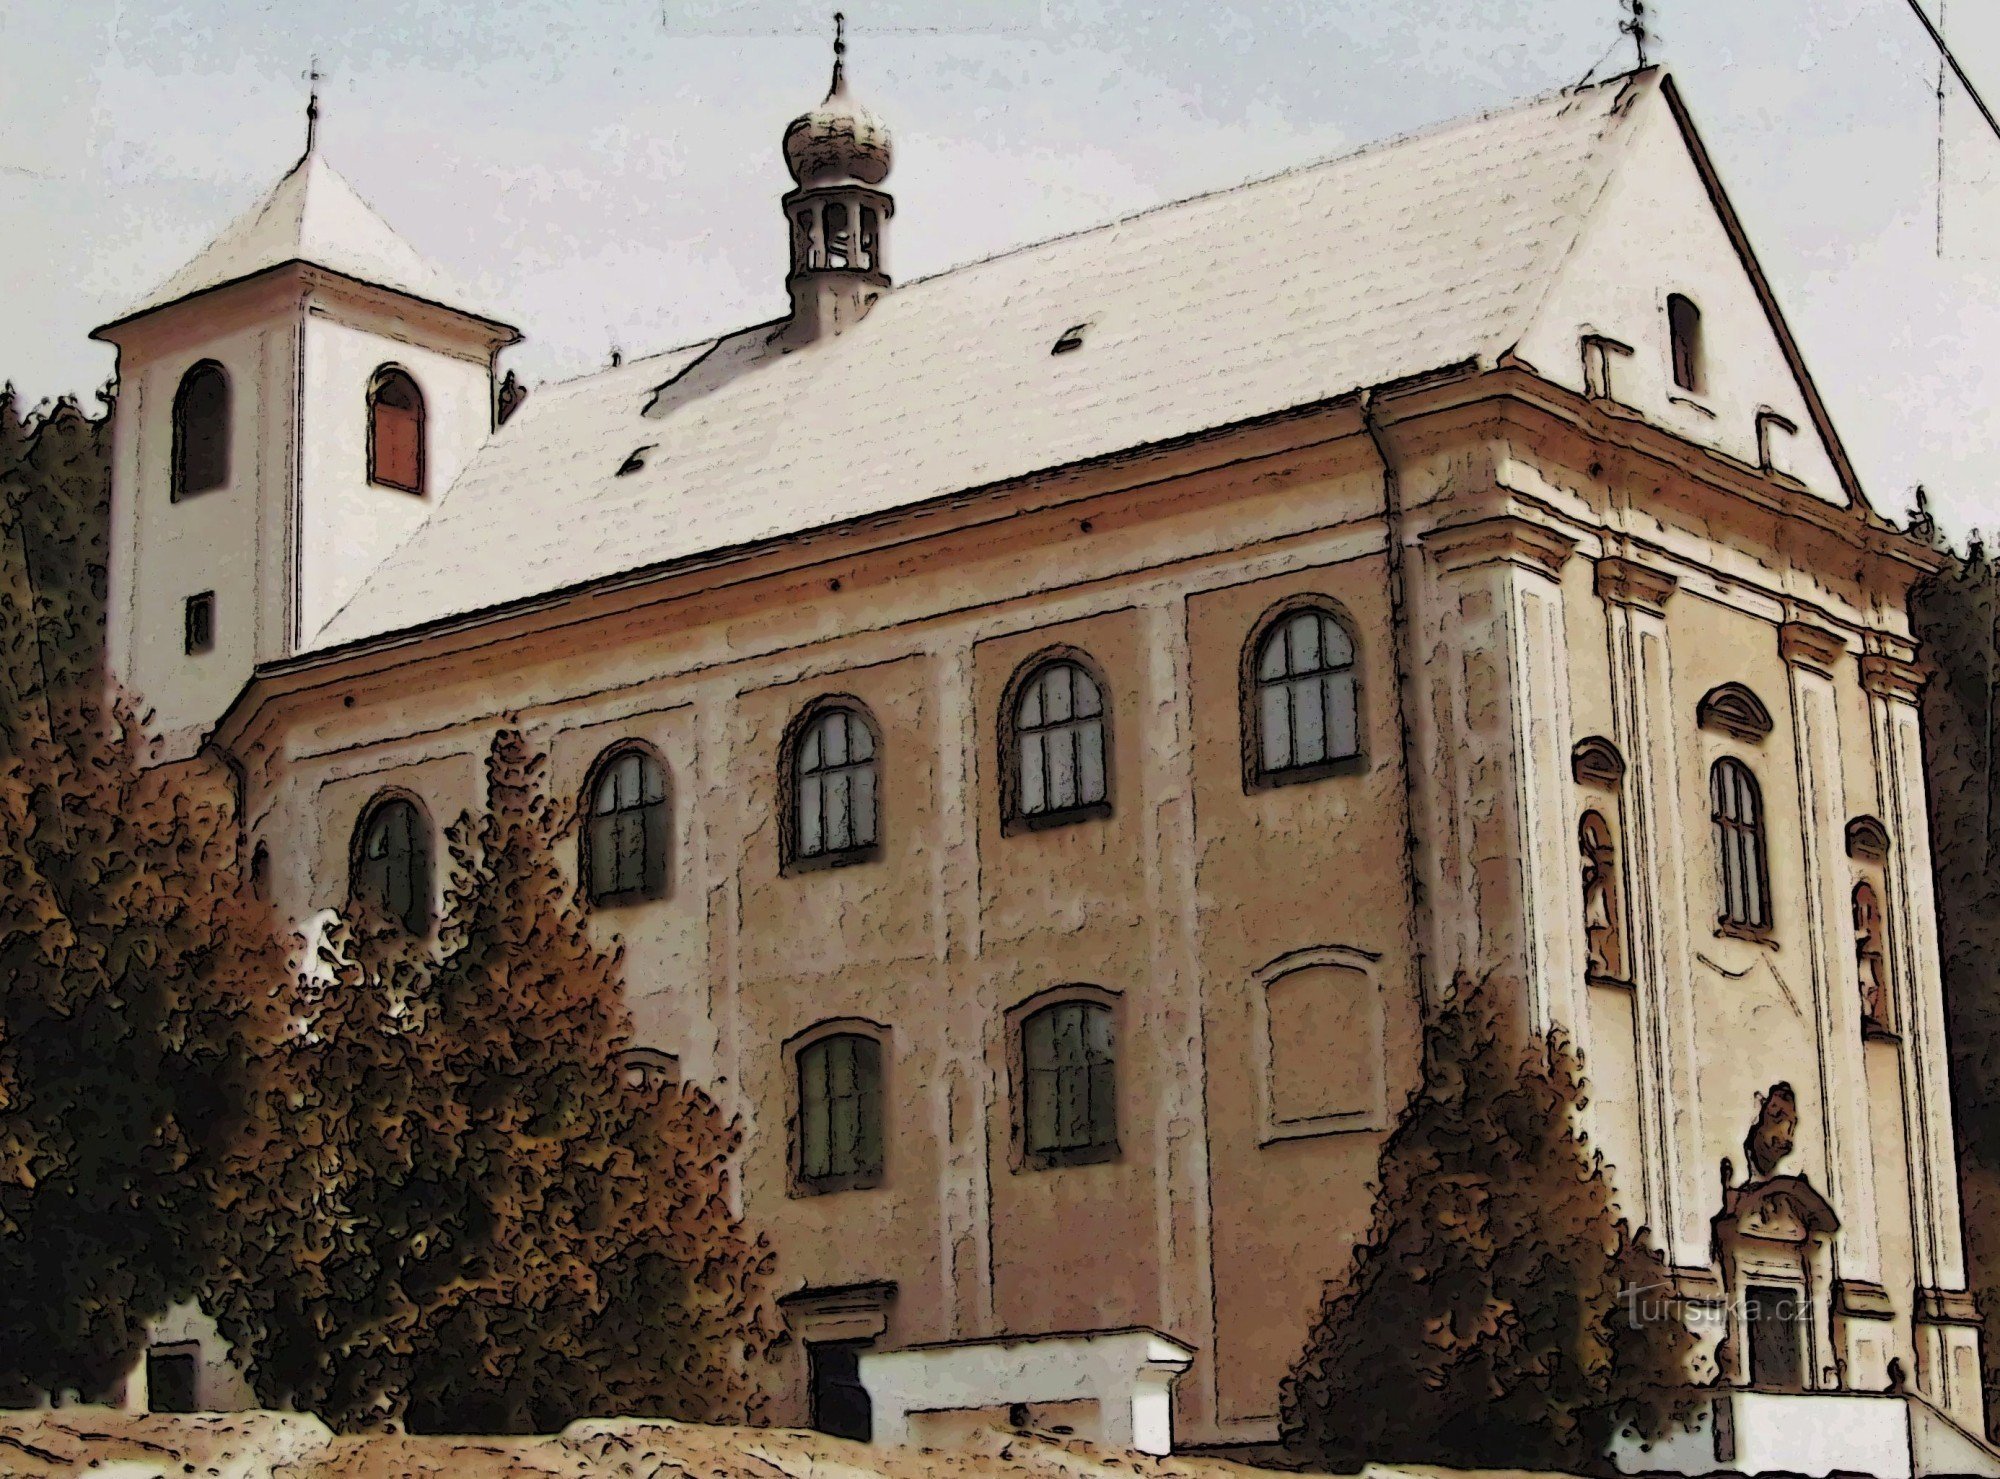 Μπαρόκ εκκλησία της Αγίας Άννας στο Rajnochovice